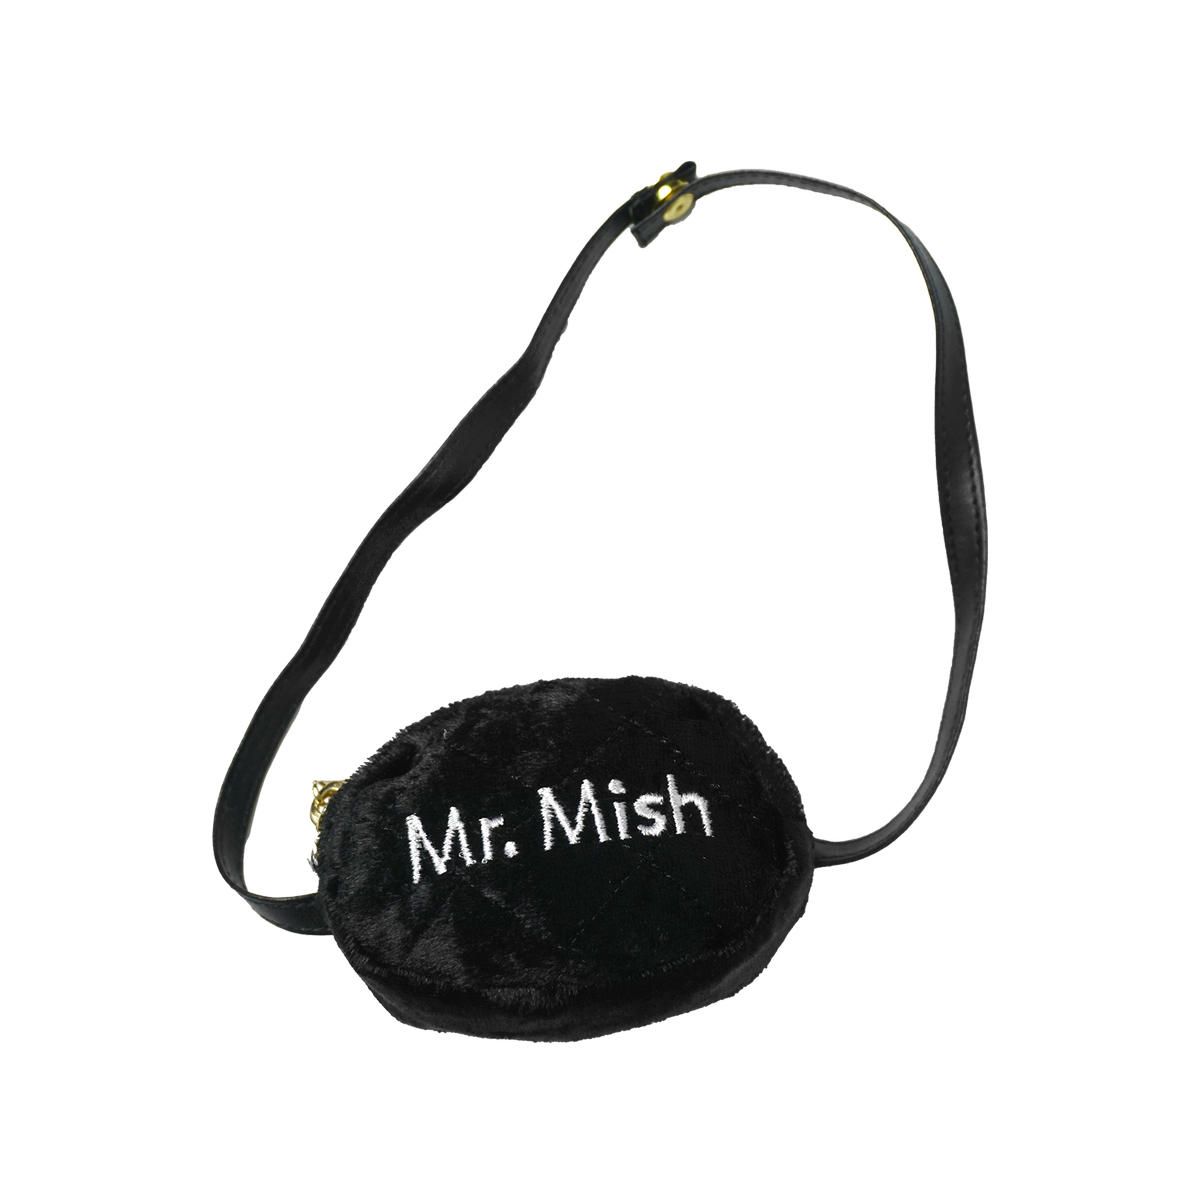 Mr mish